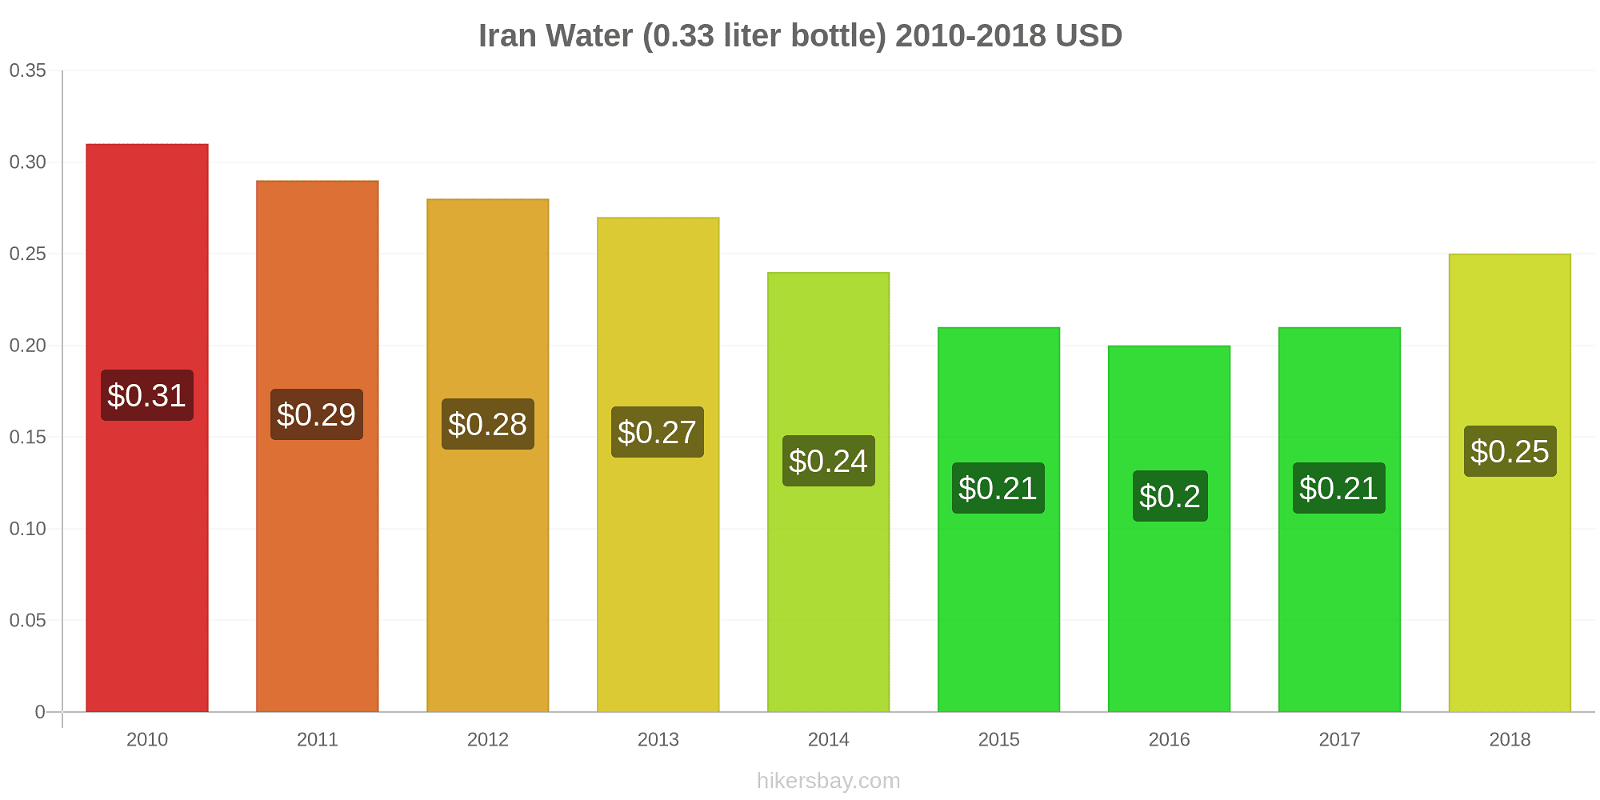 Iran price changes Water (0.33 liter bottle) hikersbay.com